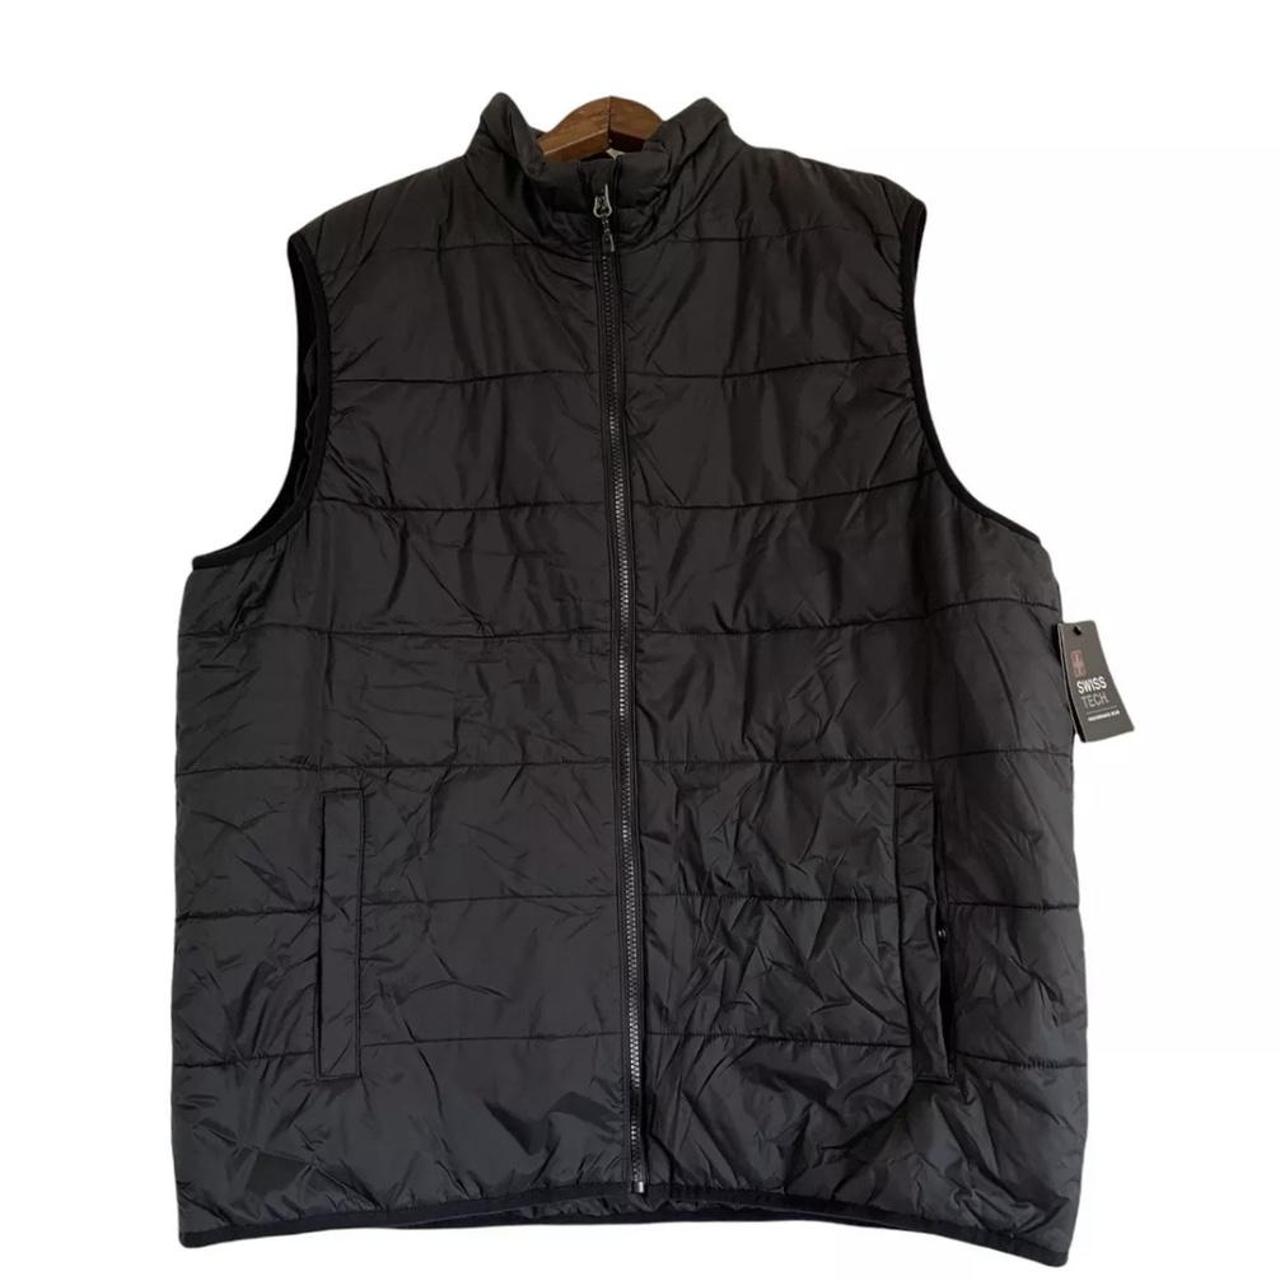 Vest: Brand: Swiss Tech, Color: Black, Size: S/CH... - Depop